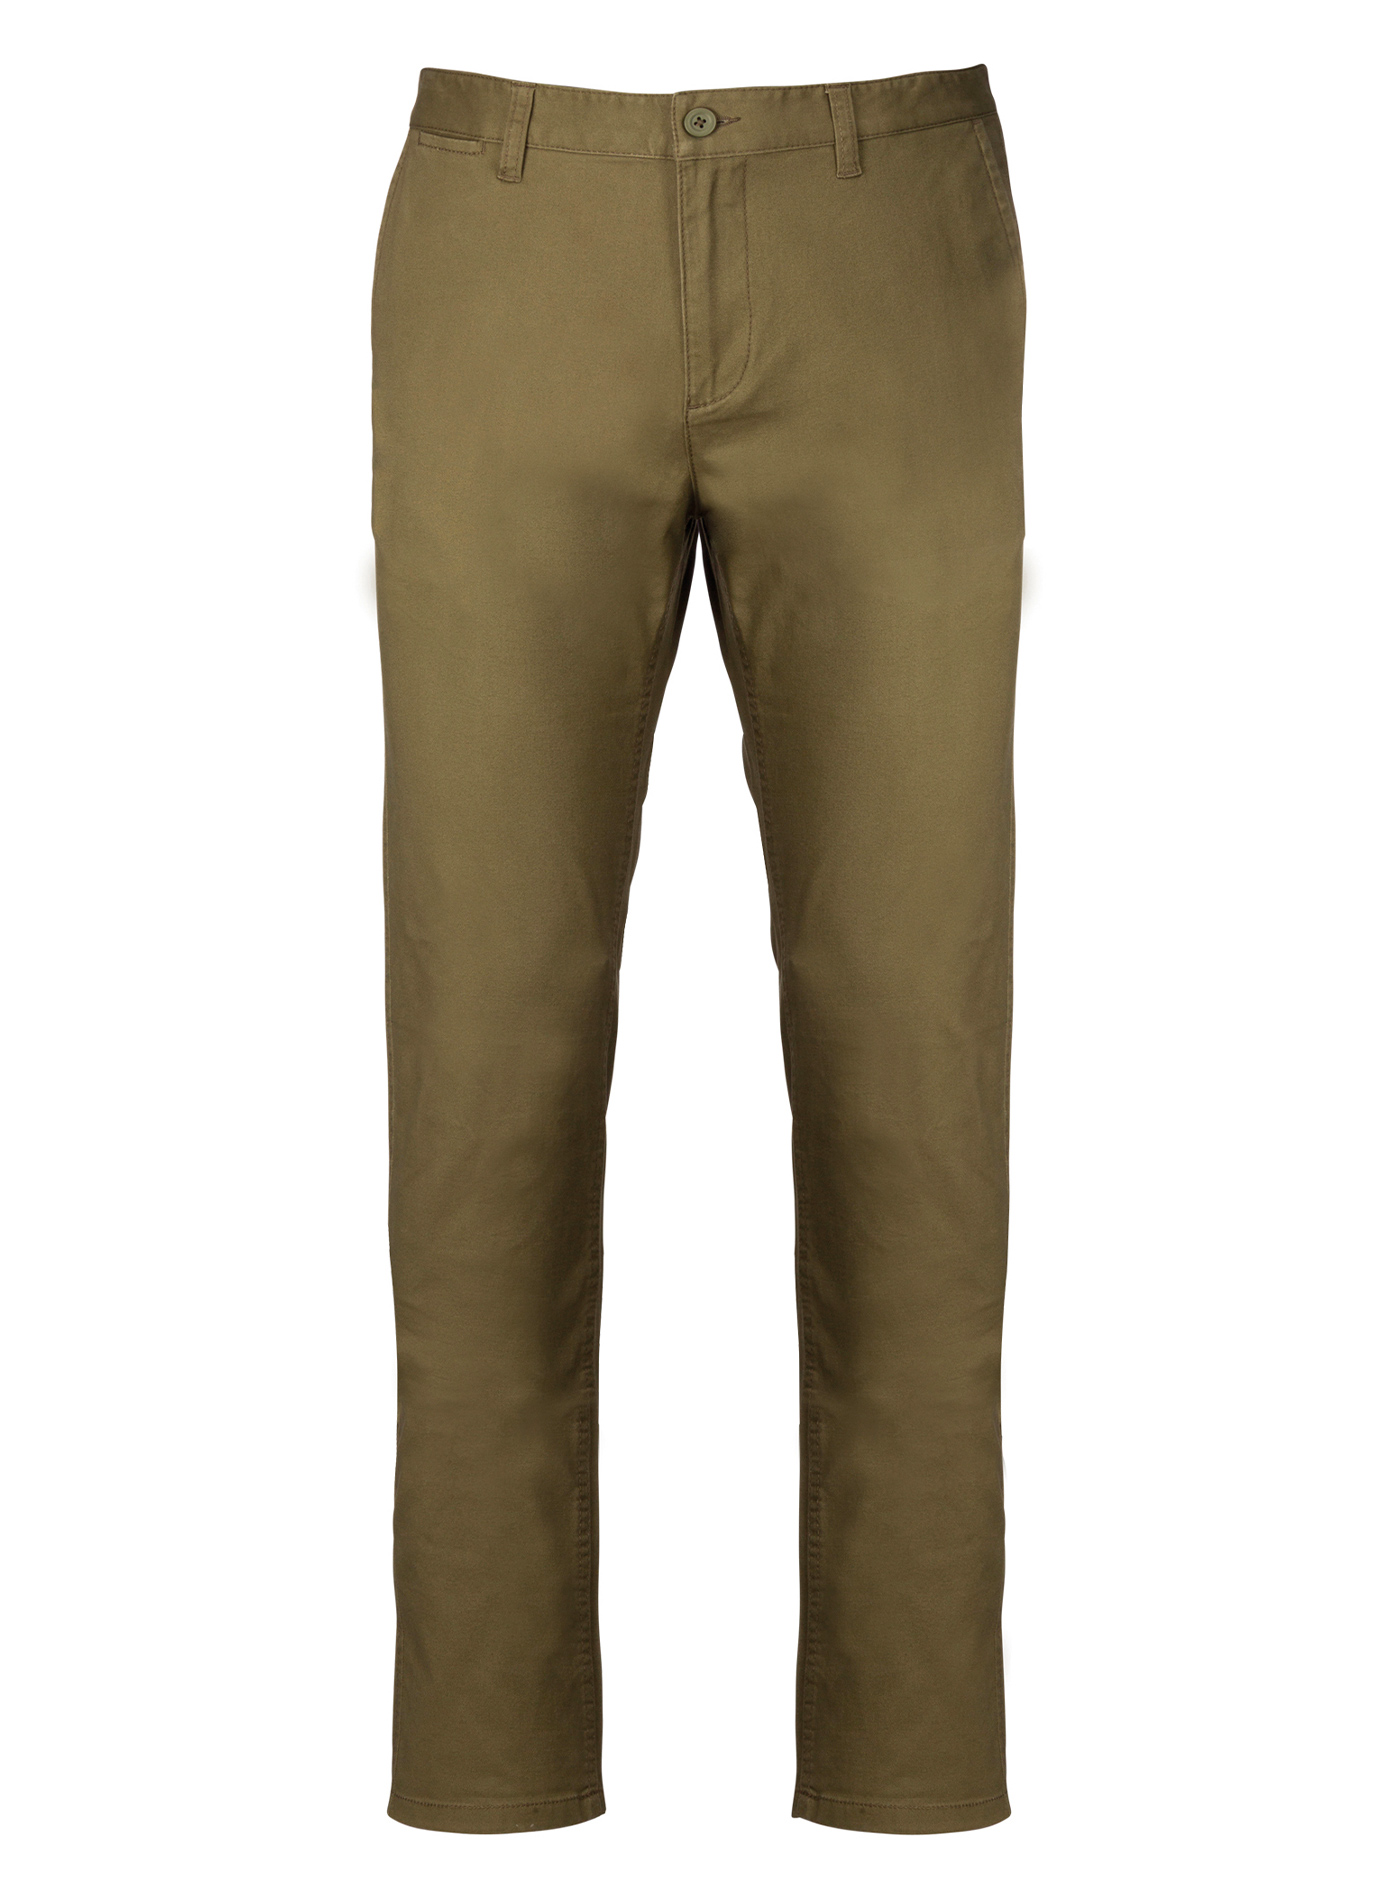 Pánské pohodlné kalhoty Chino - Khaki 38